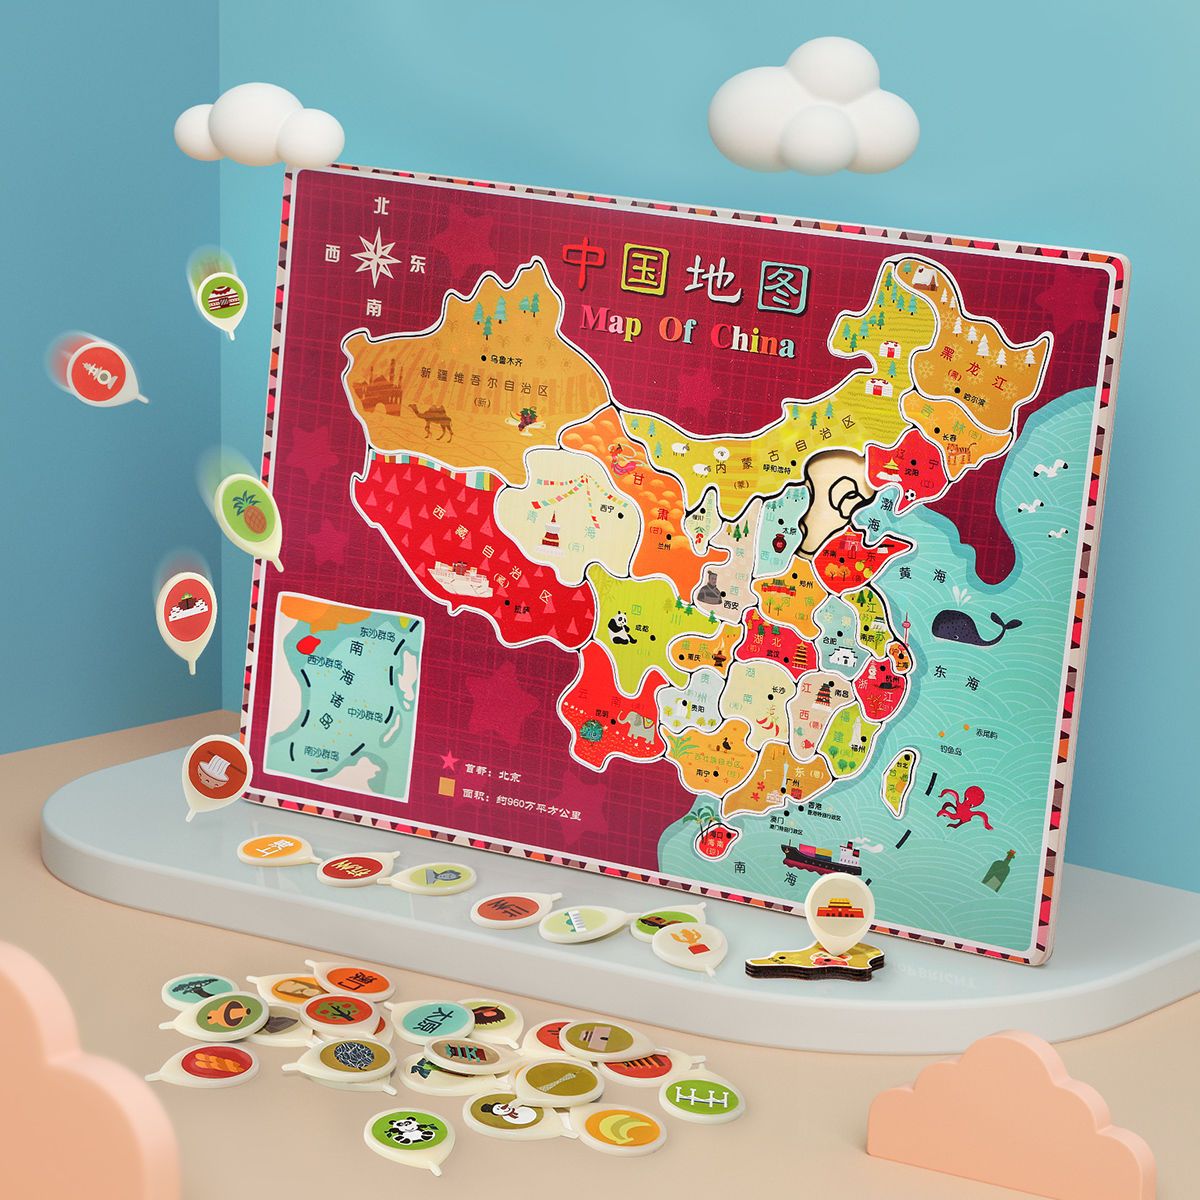 【3人团】特宝儿中国地图世界拼图幼儿玩具宝宝儿童益智早教木制拼板